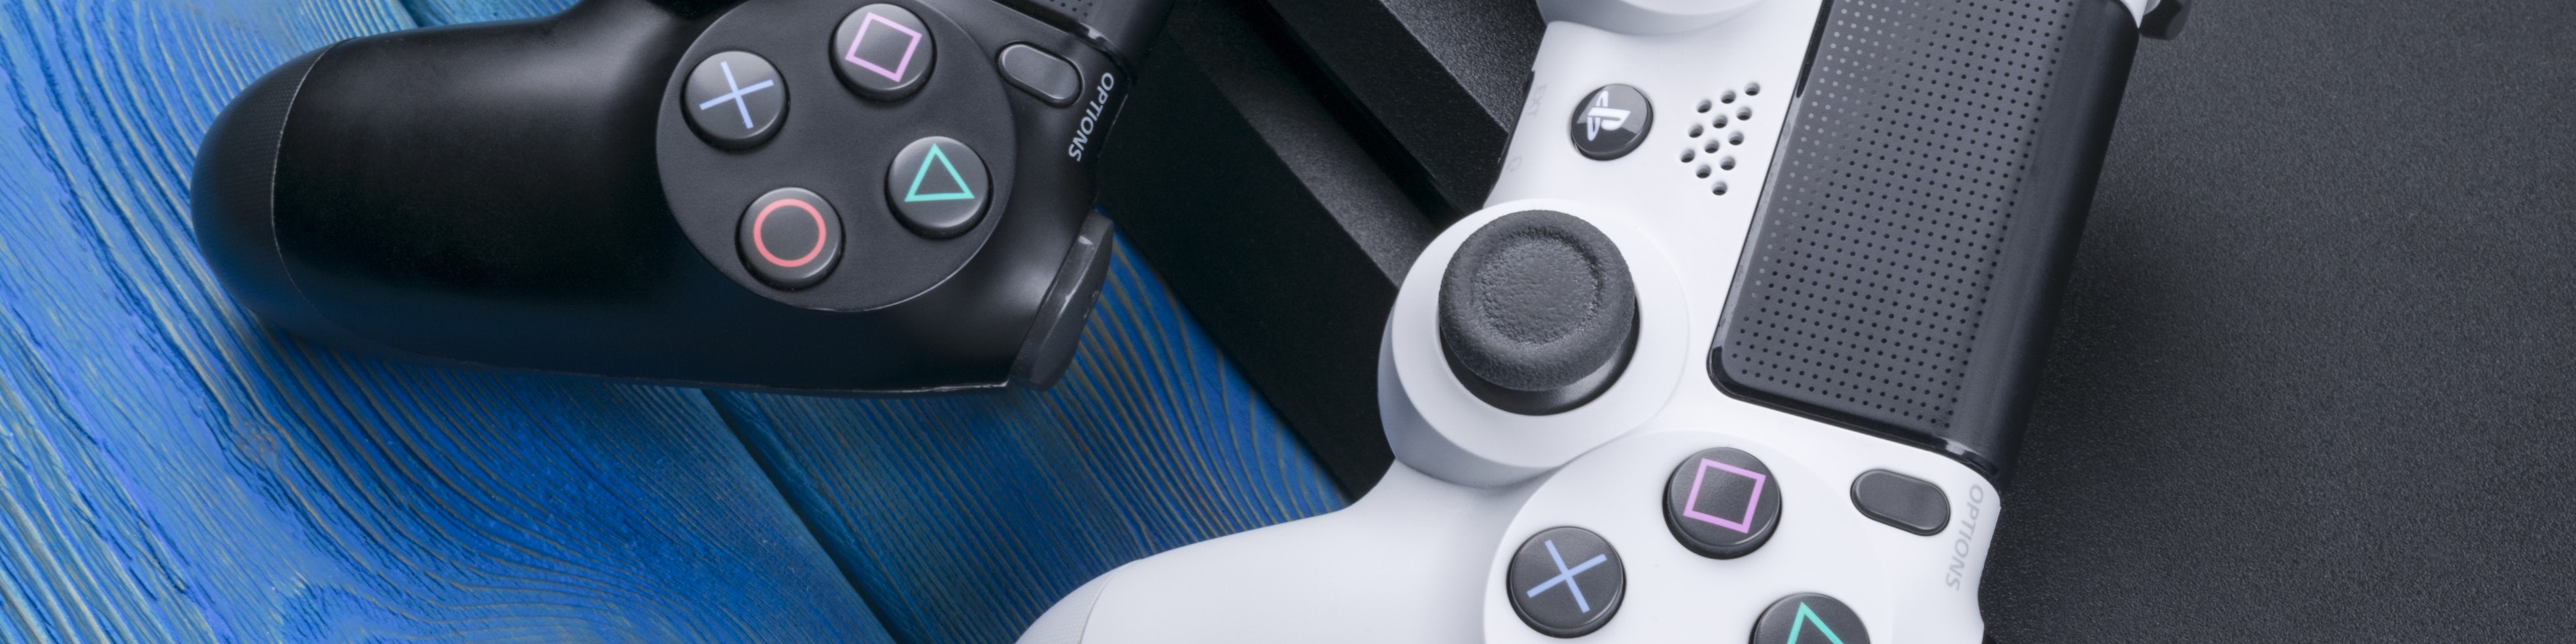 PlayStation PS4 konsoller, spil og tilbehør Bilka.dk